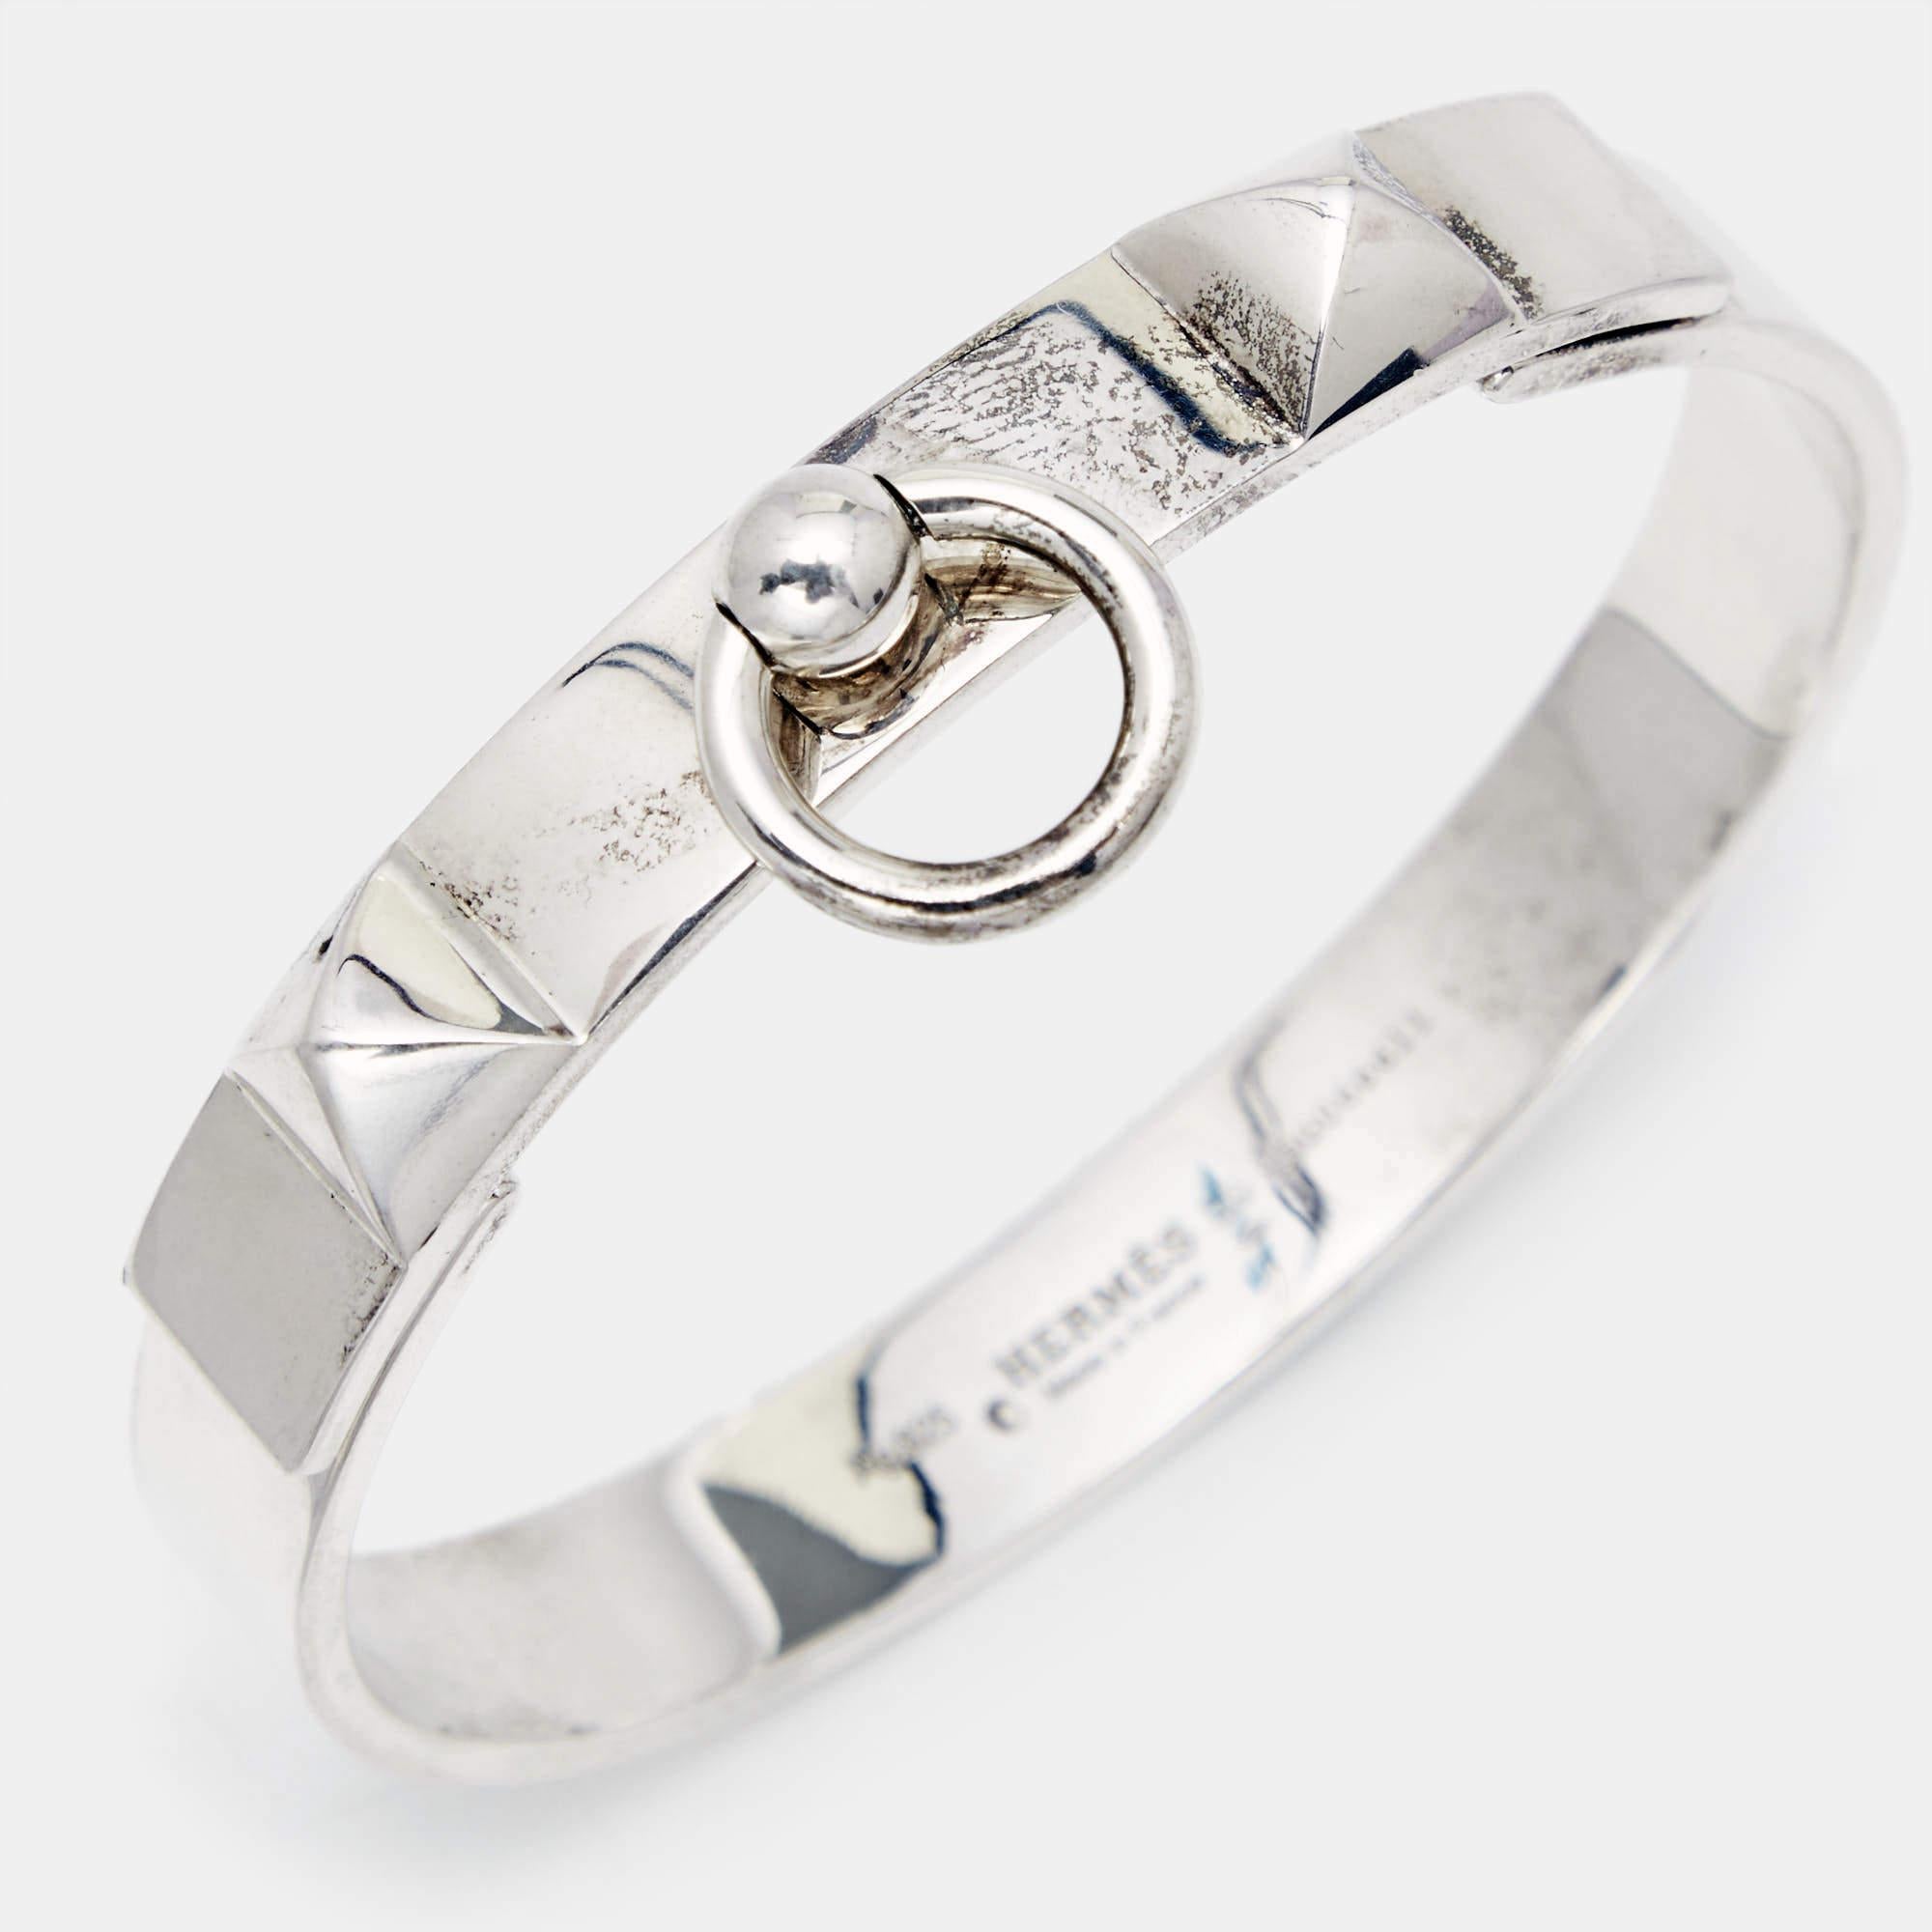 Contemporary Hermes Collier De Chien Sterling Silver Bracelet